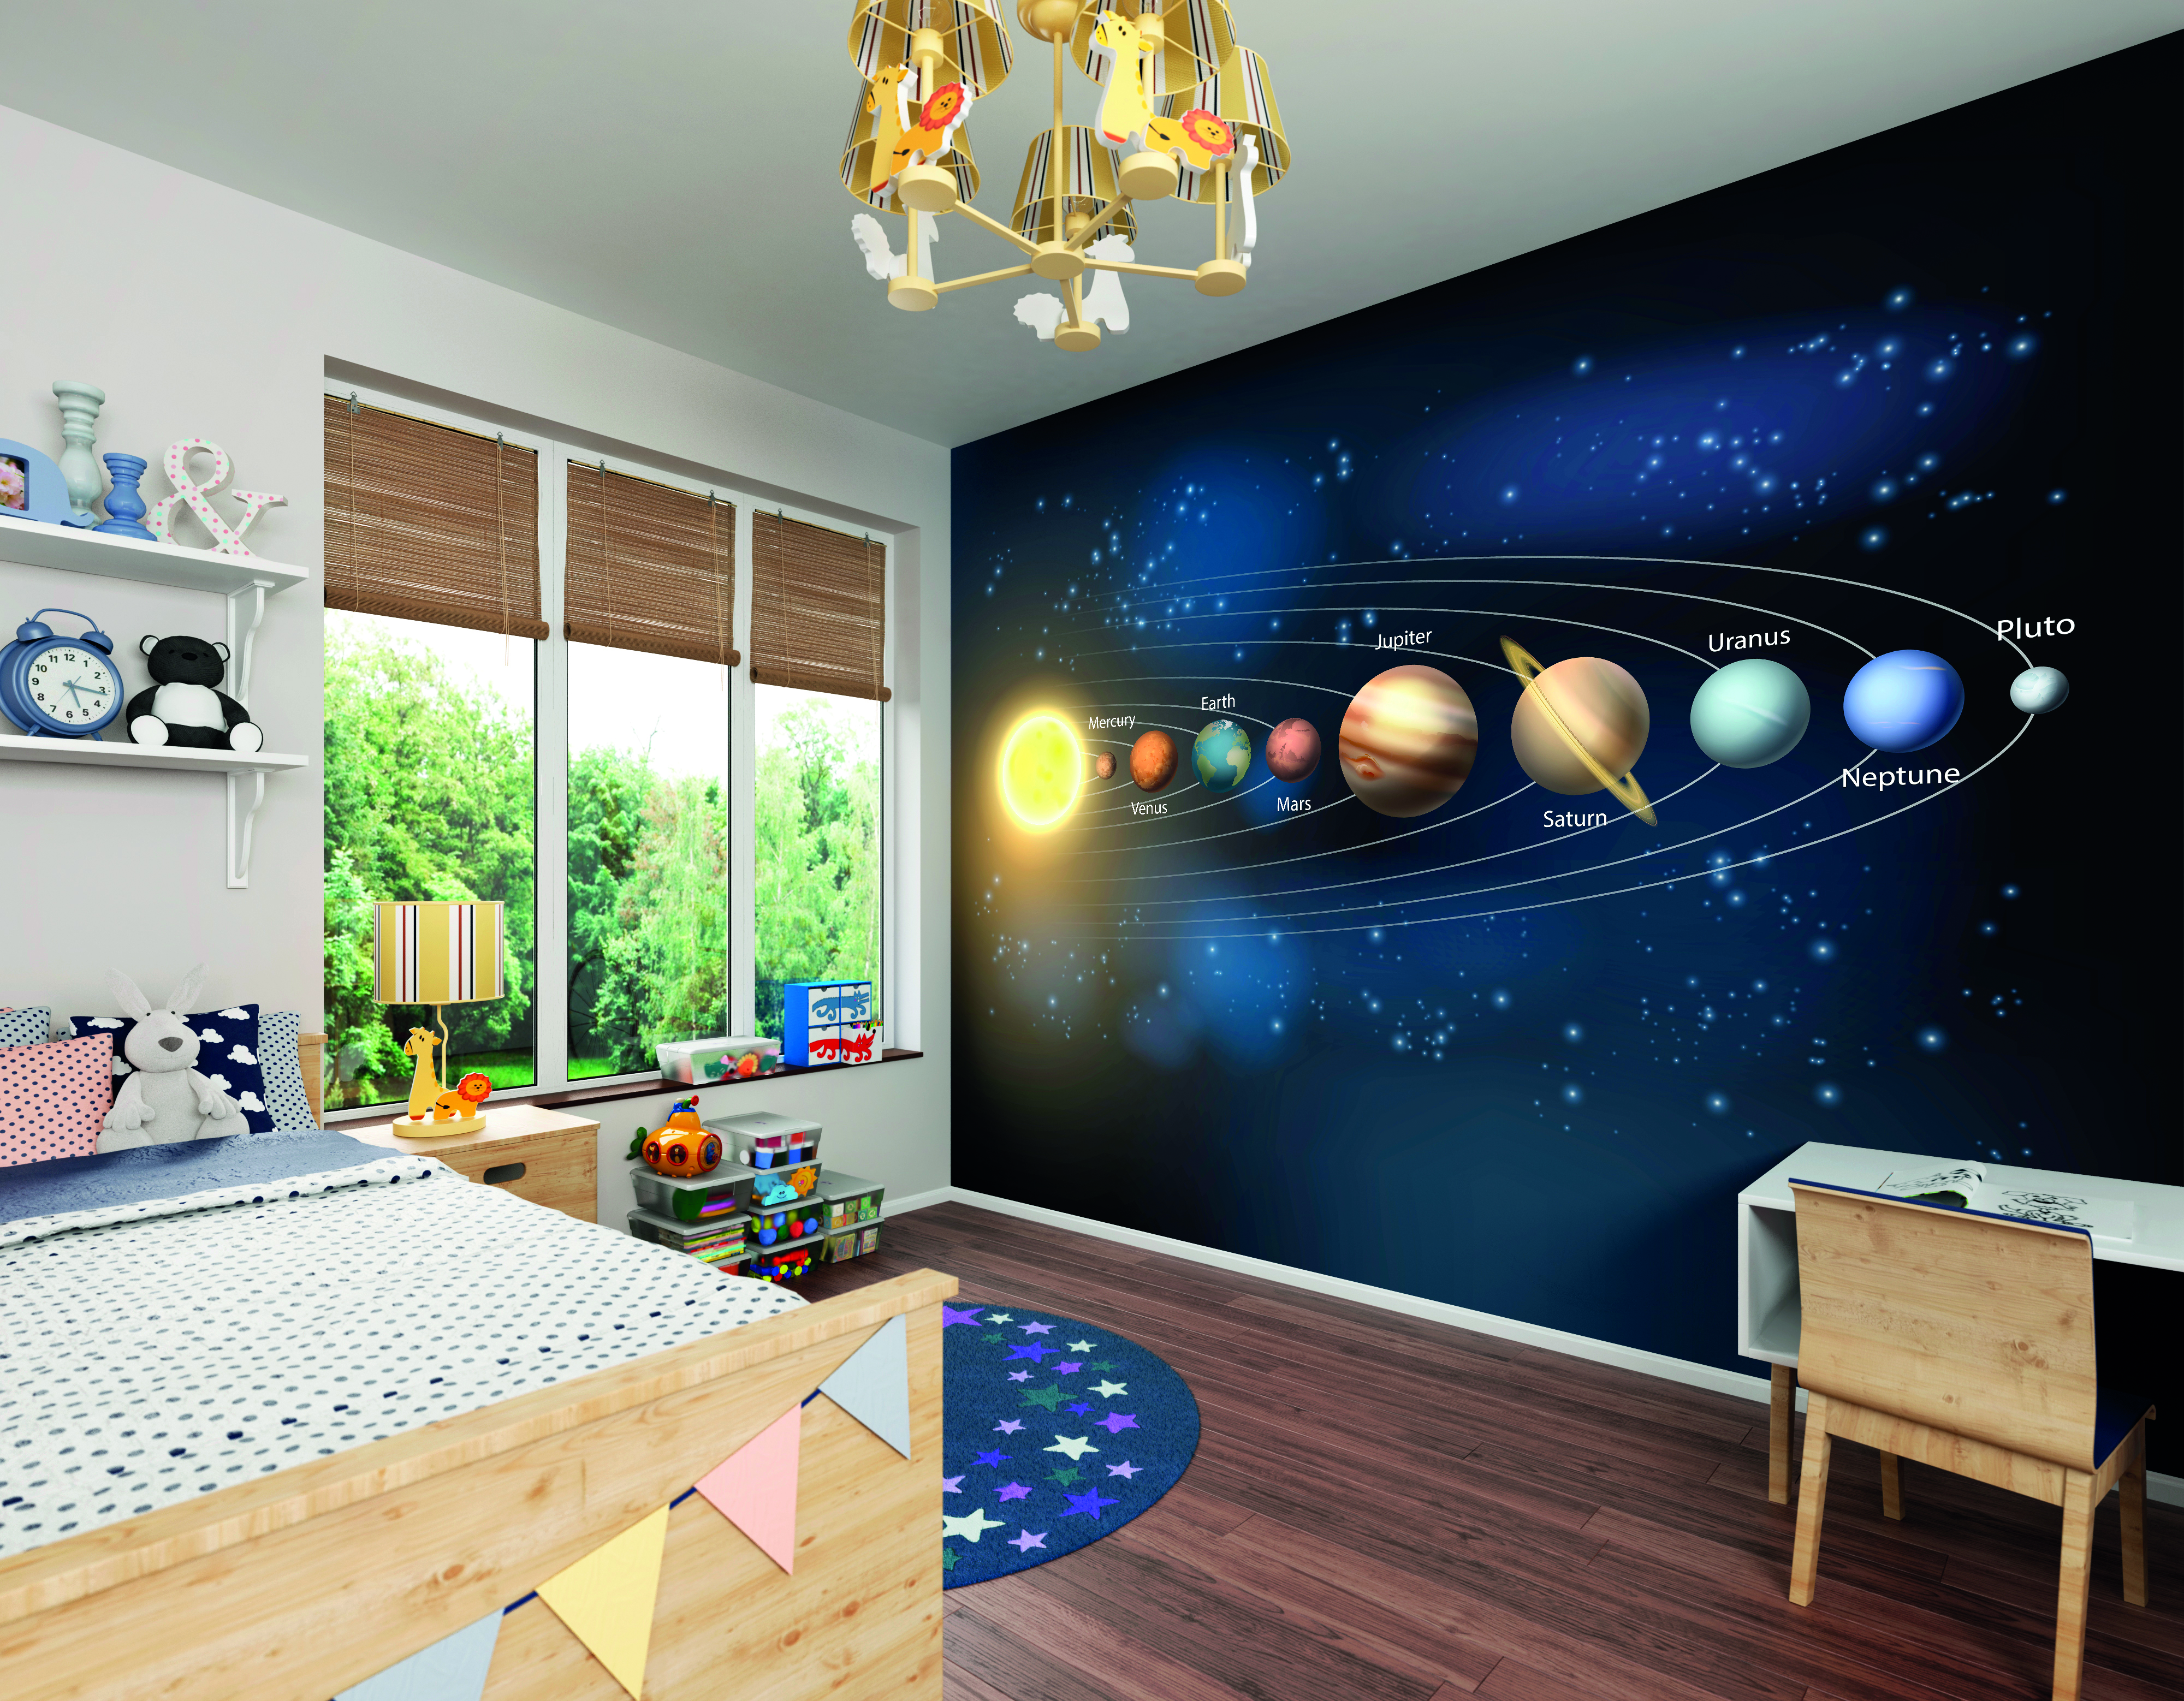 Fototapet Planets M, Multi, Origin Murals, 300x240cm